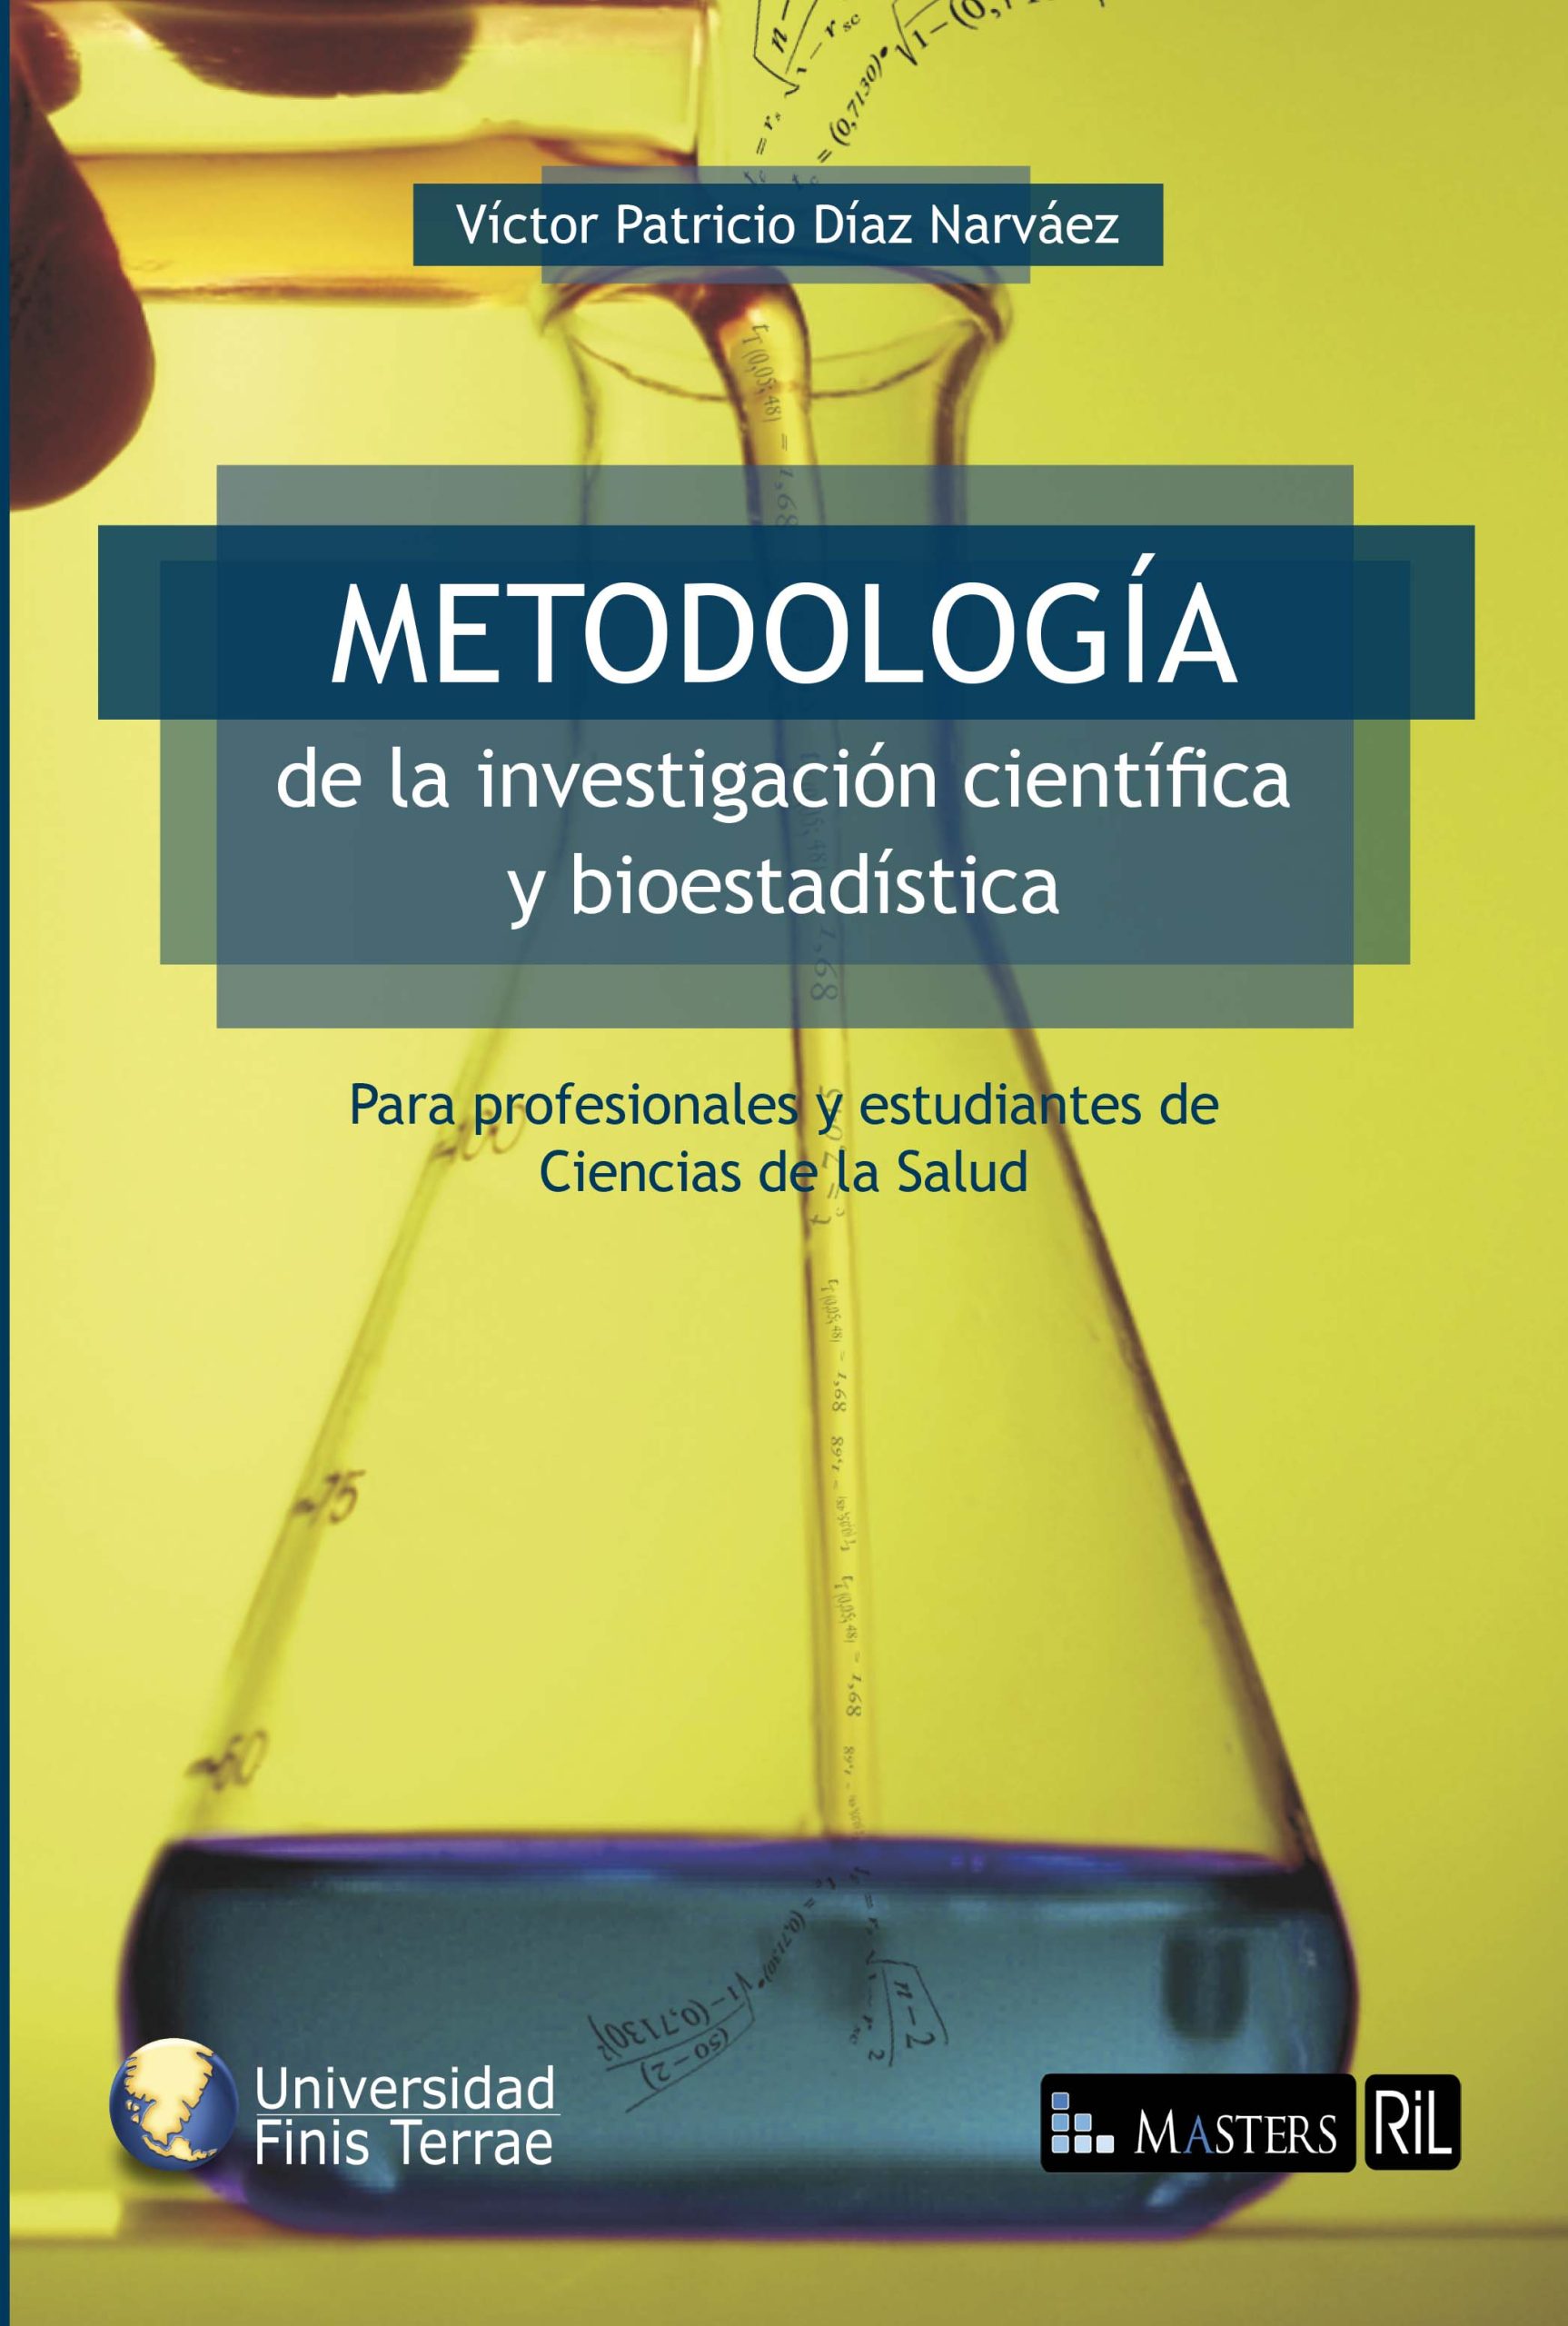 Metodología de la investigación científica y bioestadística: para médicos, odontólogos y estudiantes de ciencias de la salud 1